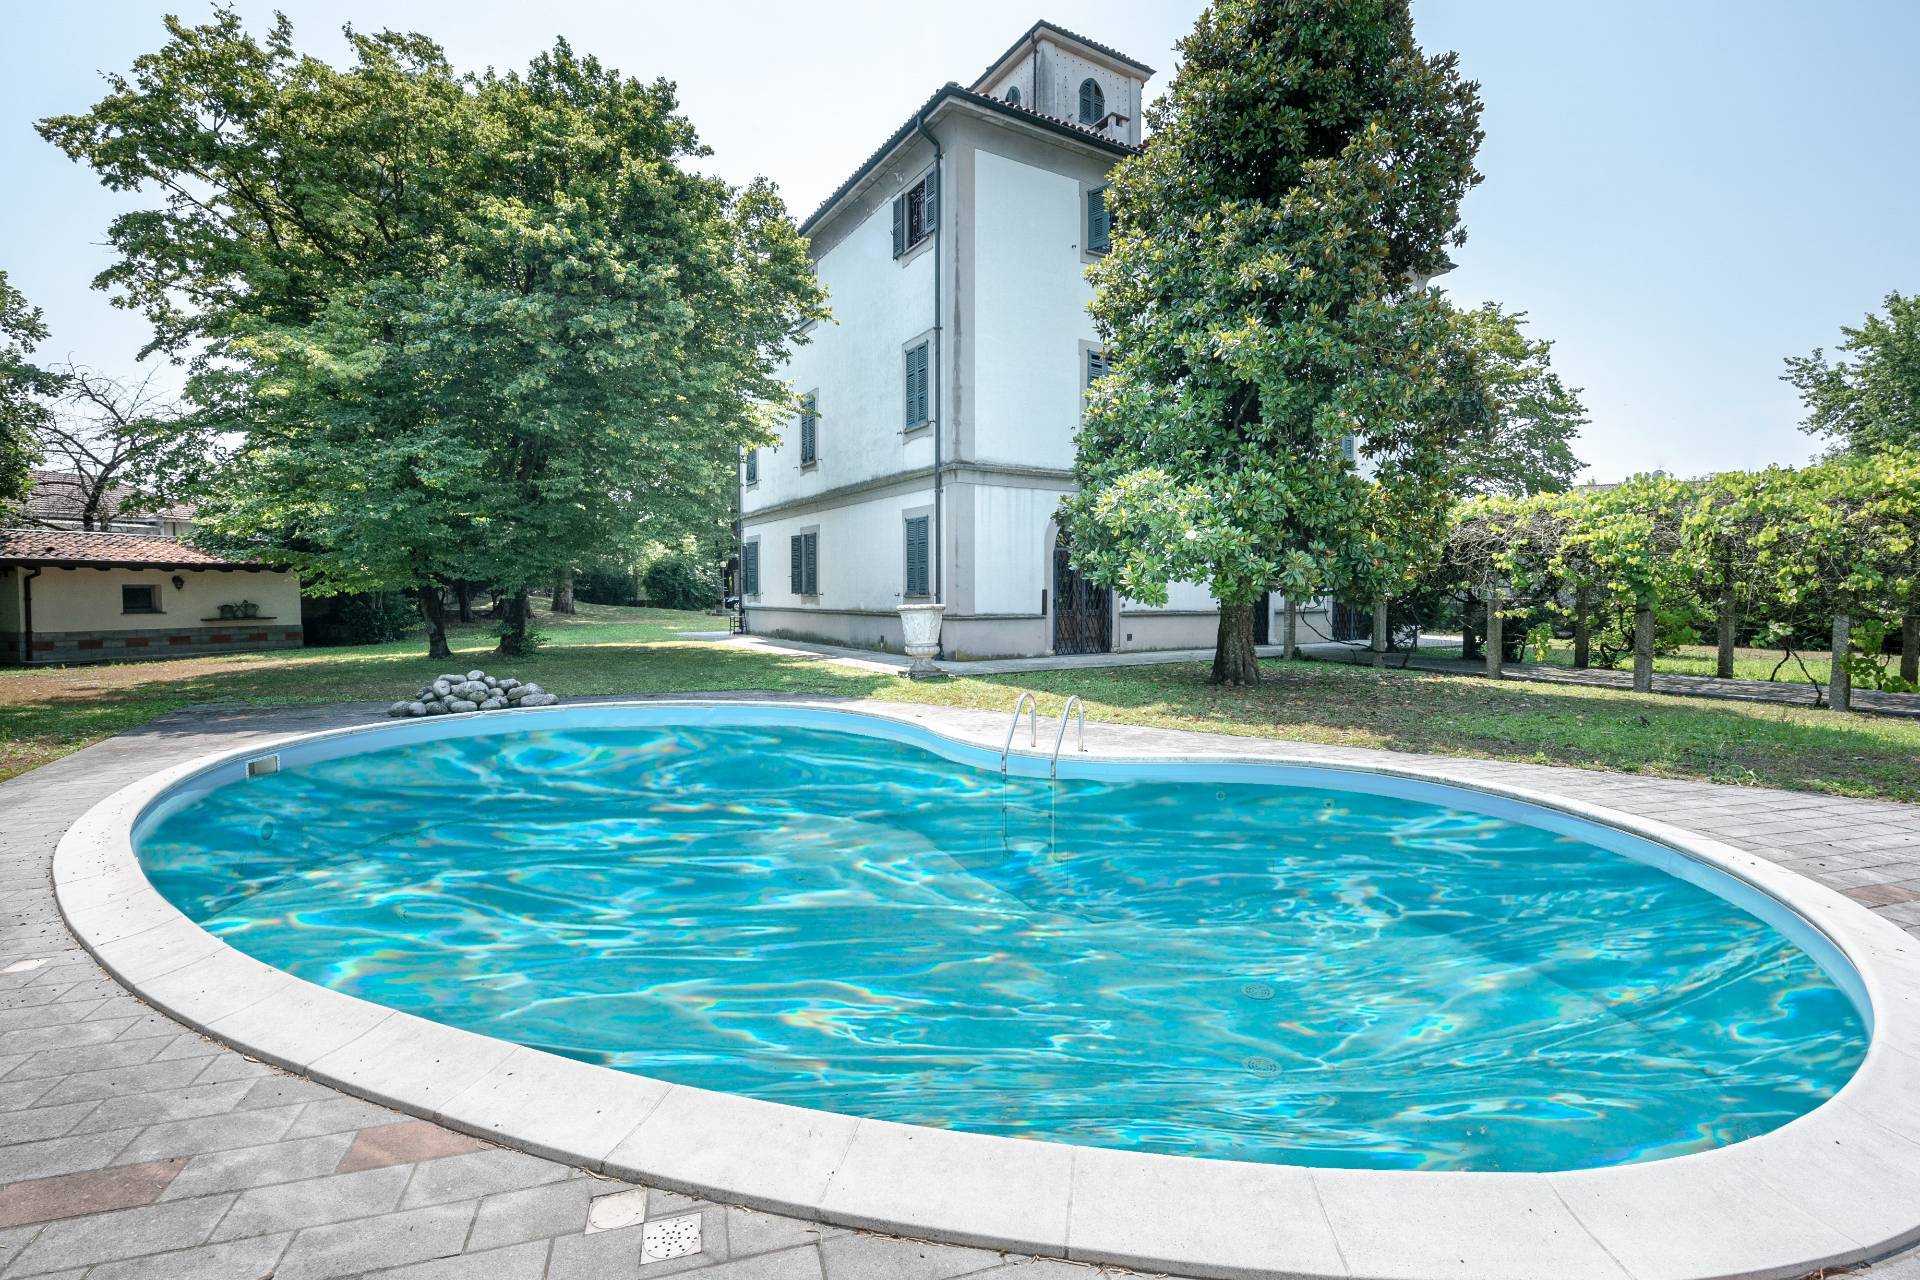 Villa in Vendita a Vigevano: 5 locali, 1000 mq - Foto 3